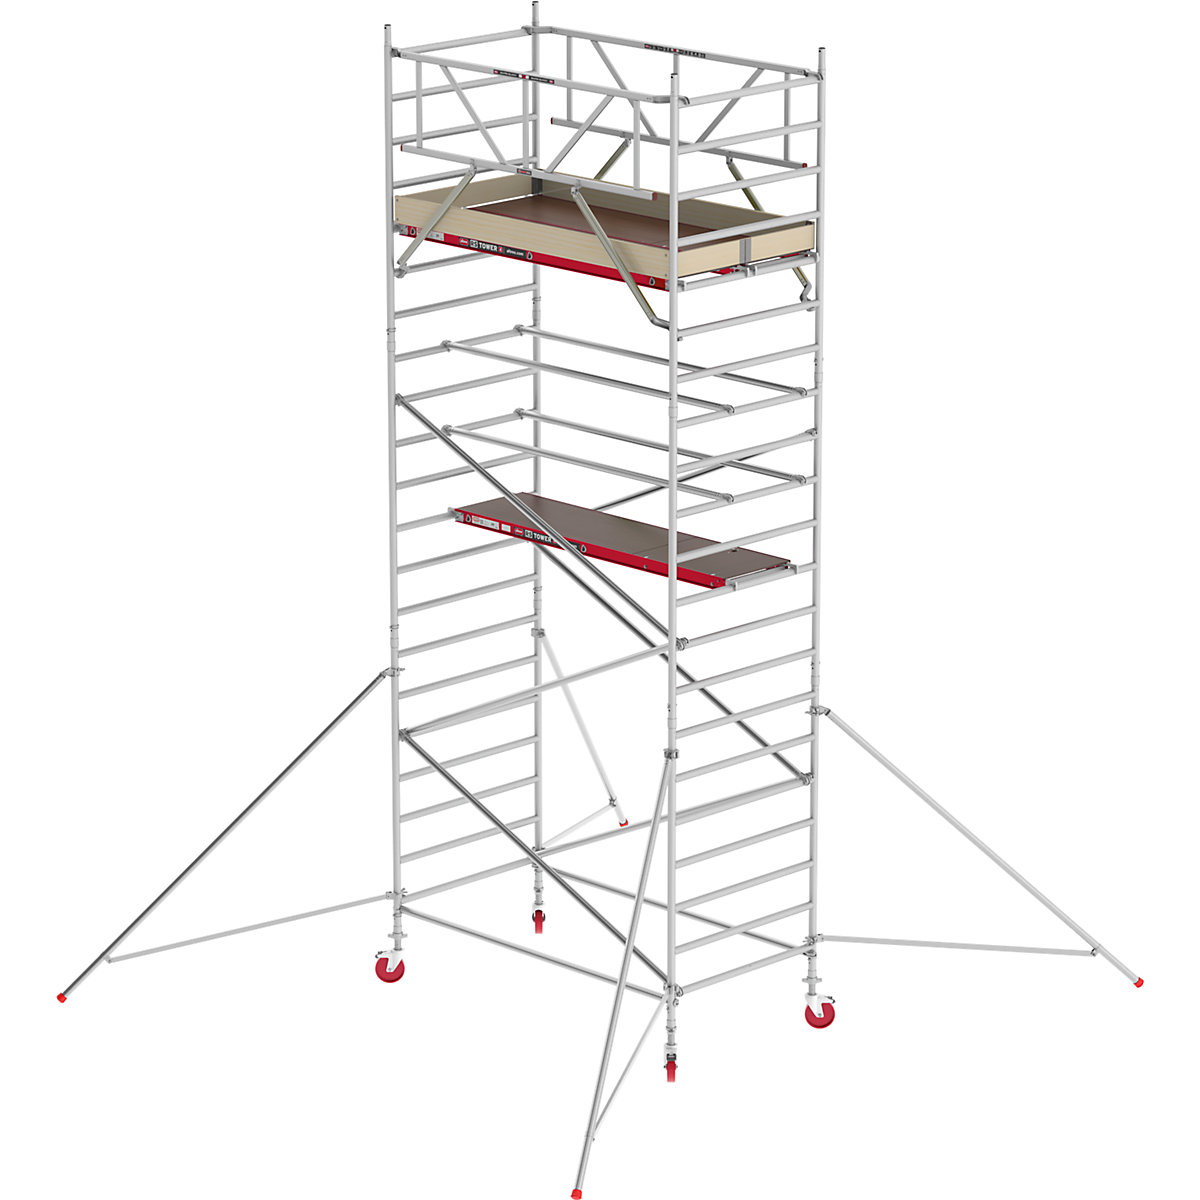 Trabattello mobile RS TOWER 42 largo – Altrex, piattaforma in legno, lunghezza 2,45 m, altezza di lavoro 7,20 m-8